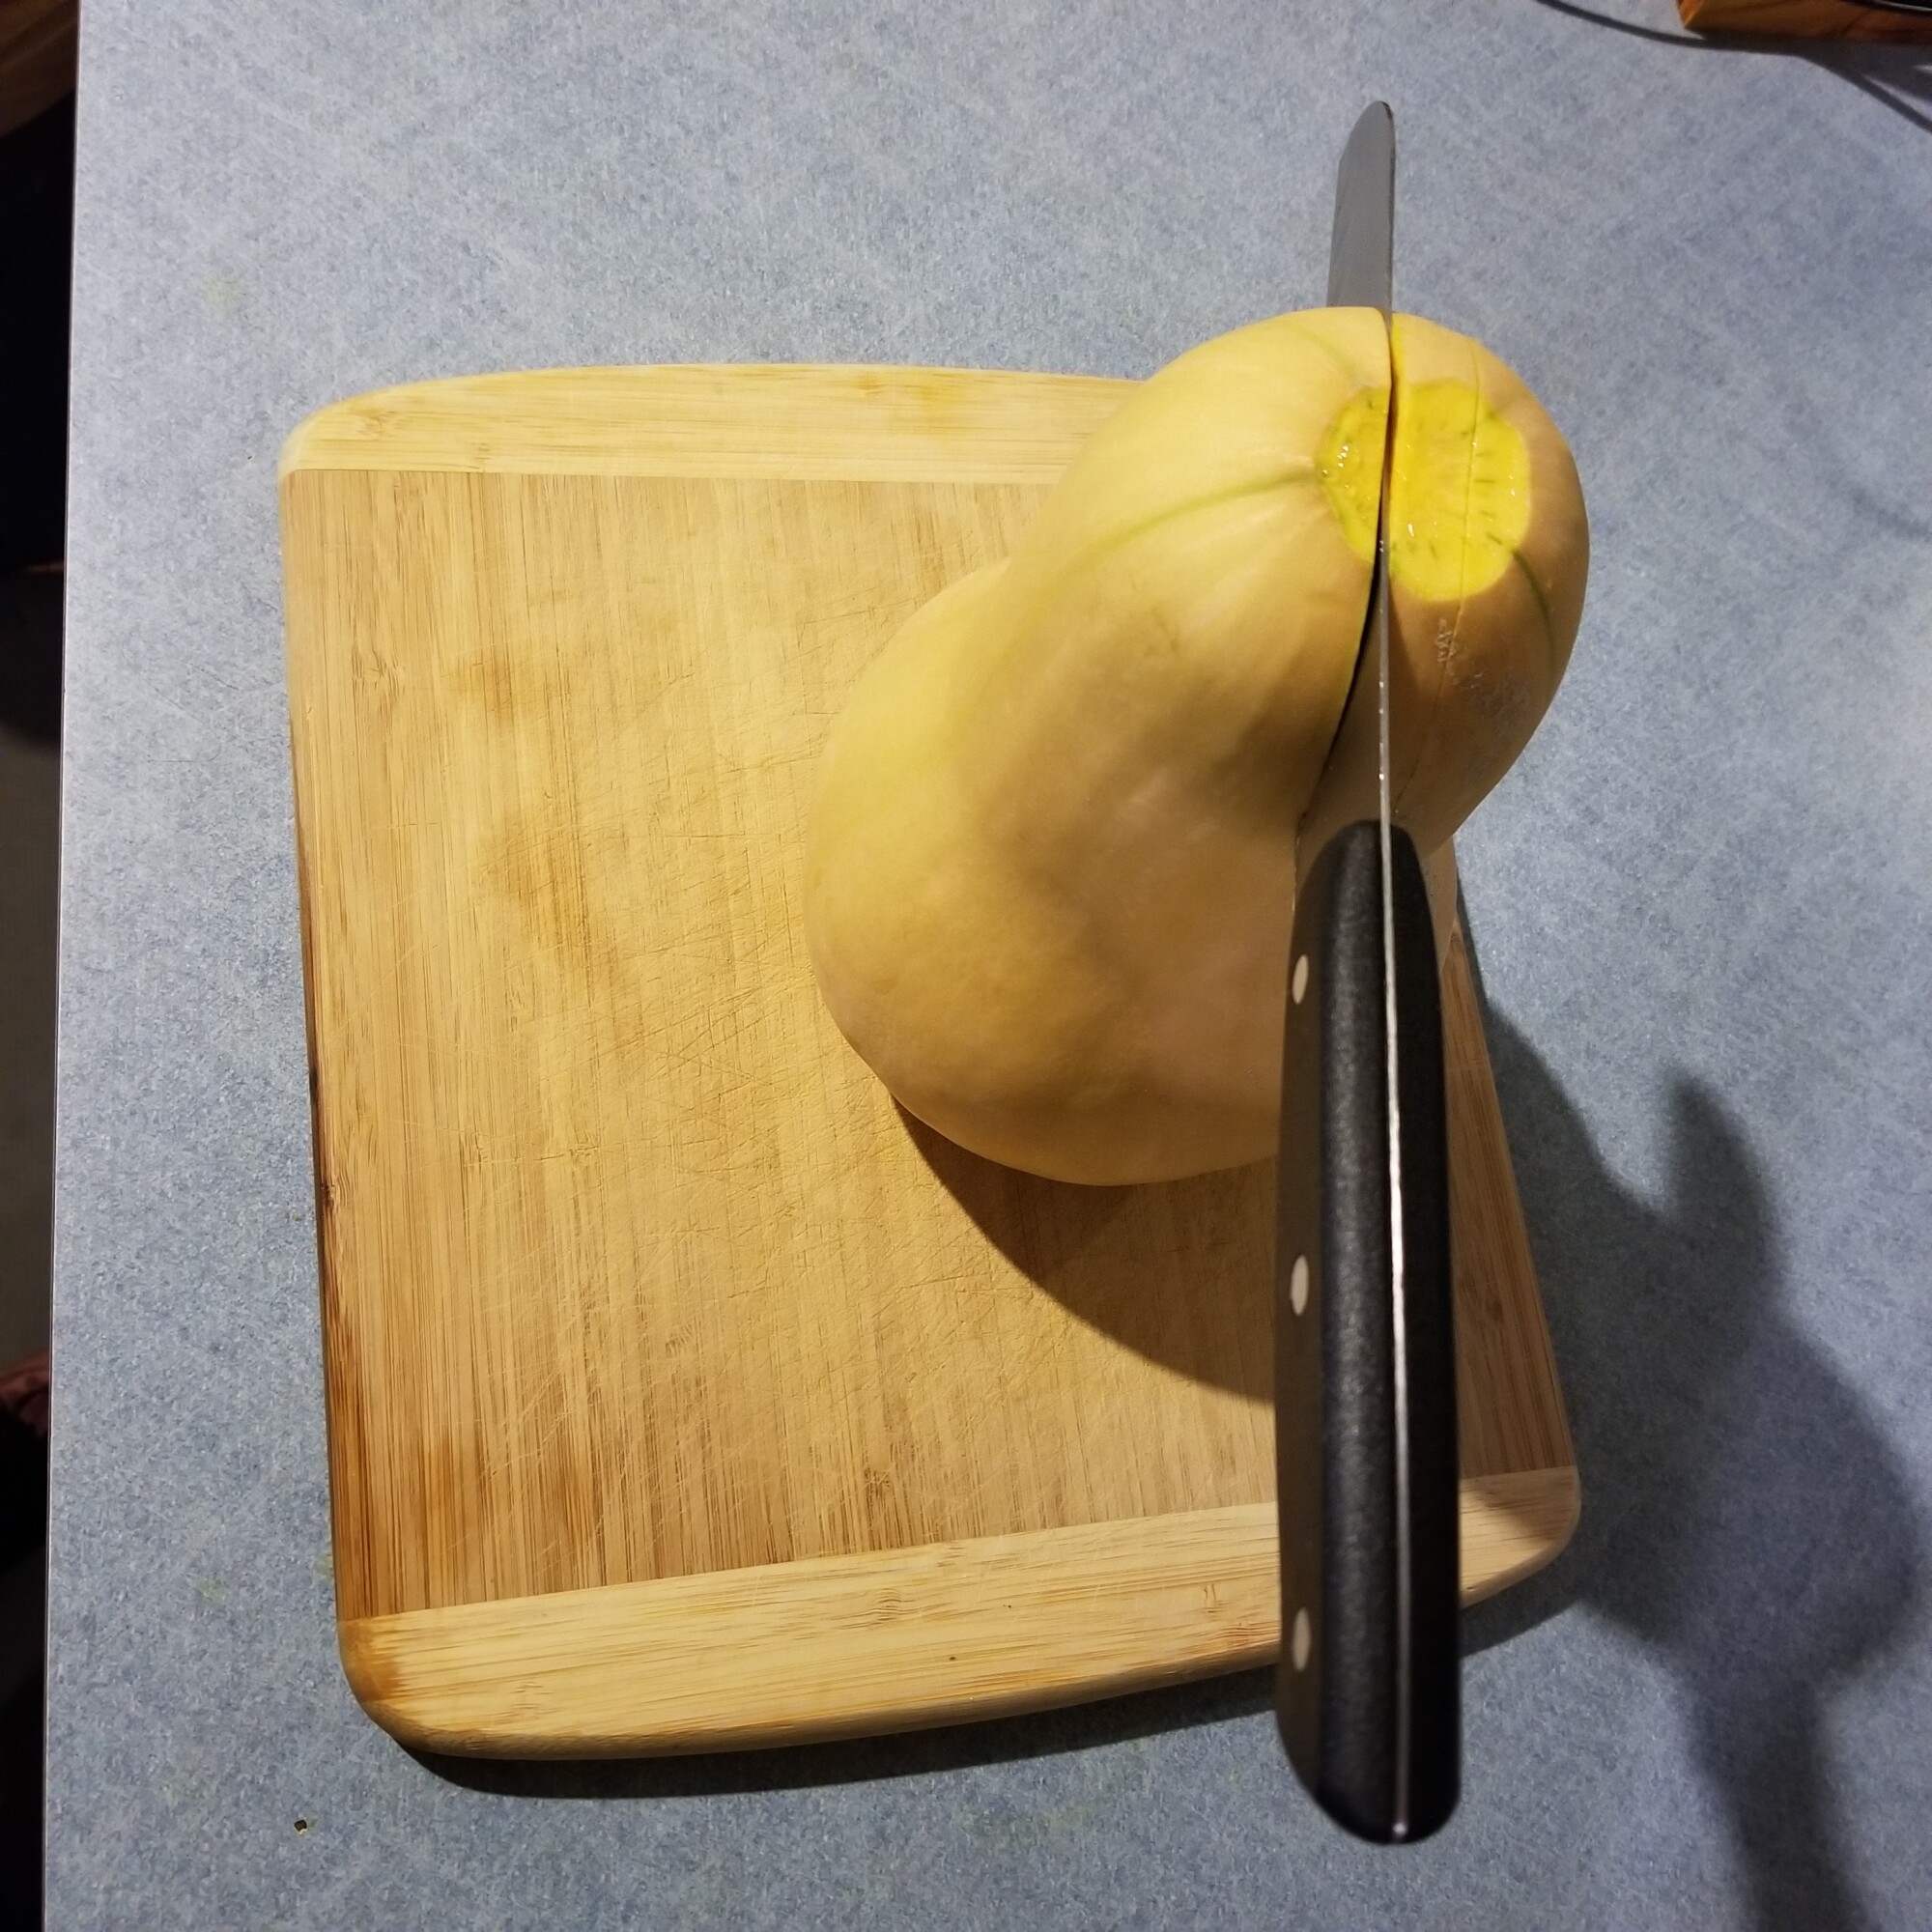 butternut squash cutting